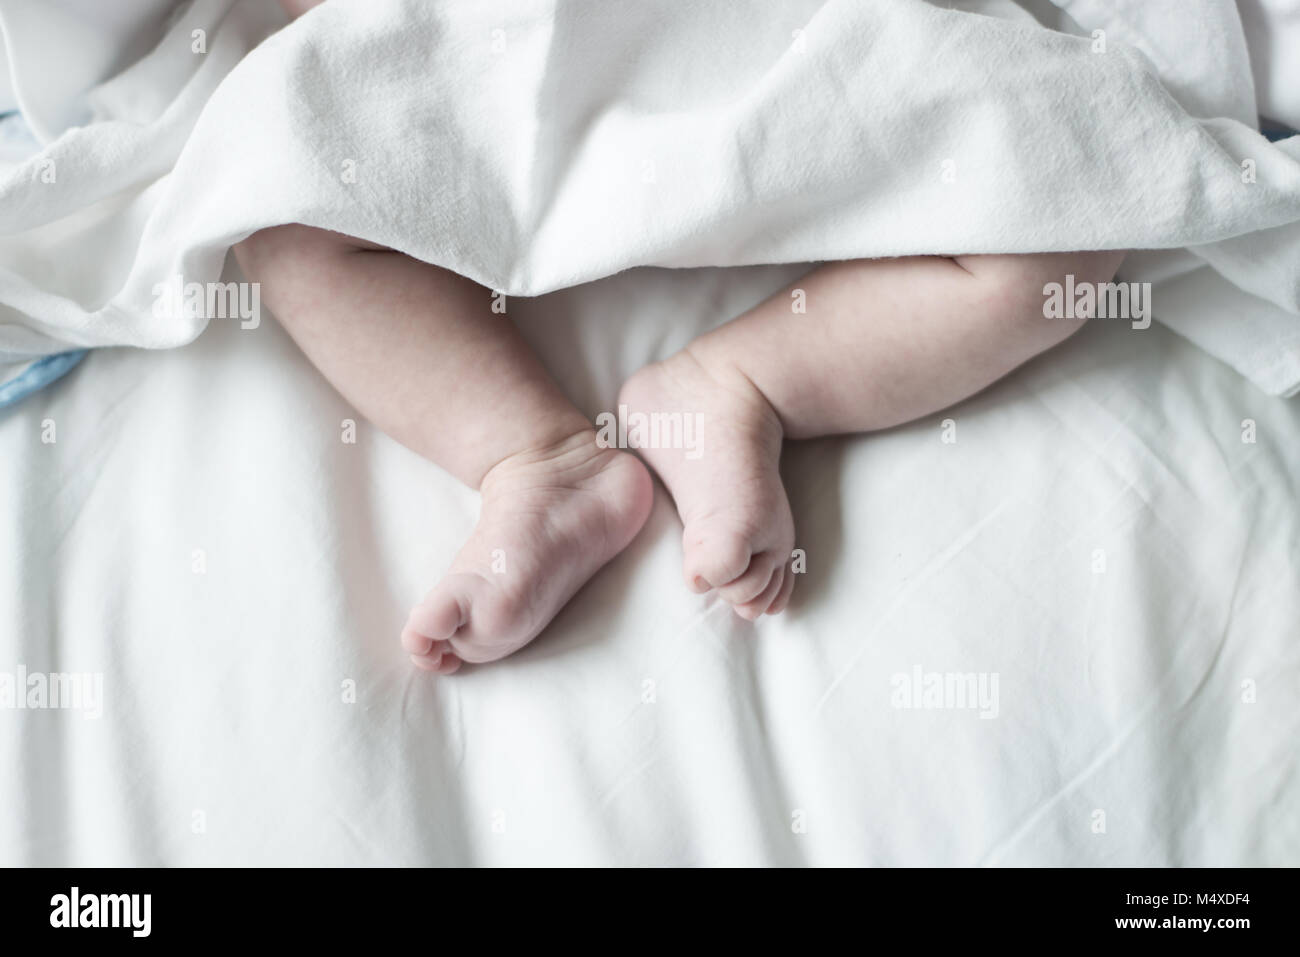 La foto è stata scattata dal neonato per ostetricia e ginecologia Foto Stock